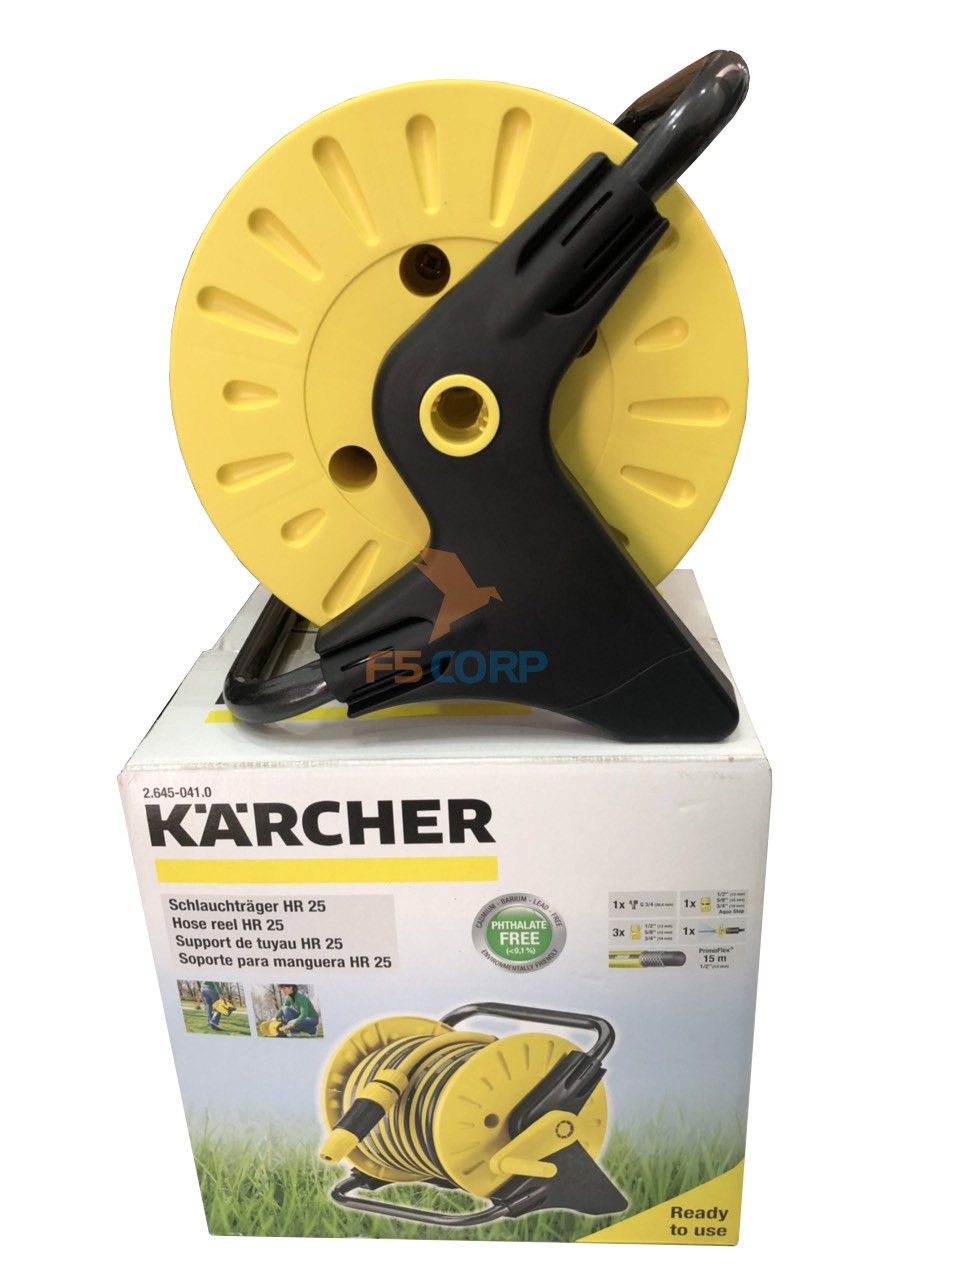 Bộ rulo vòi tưới 15m Karcher HR25 mã 2.645-041.0